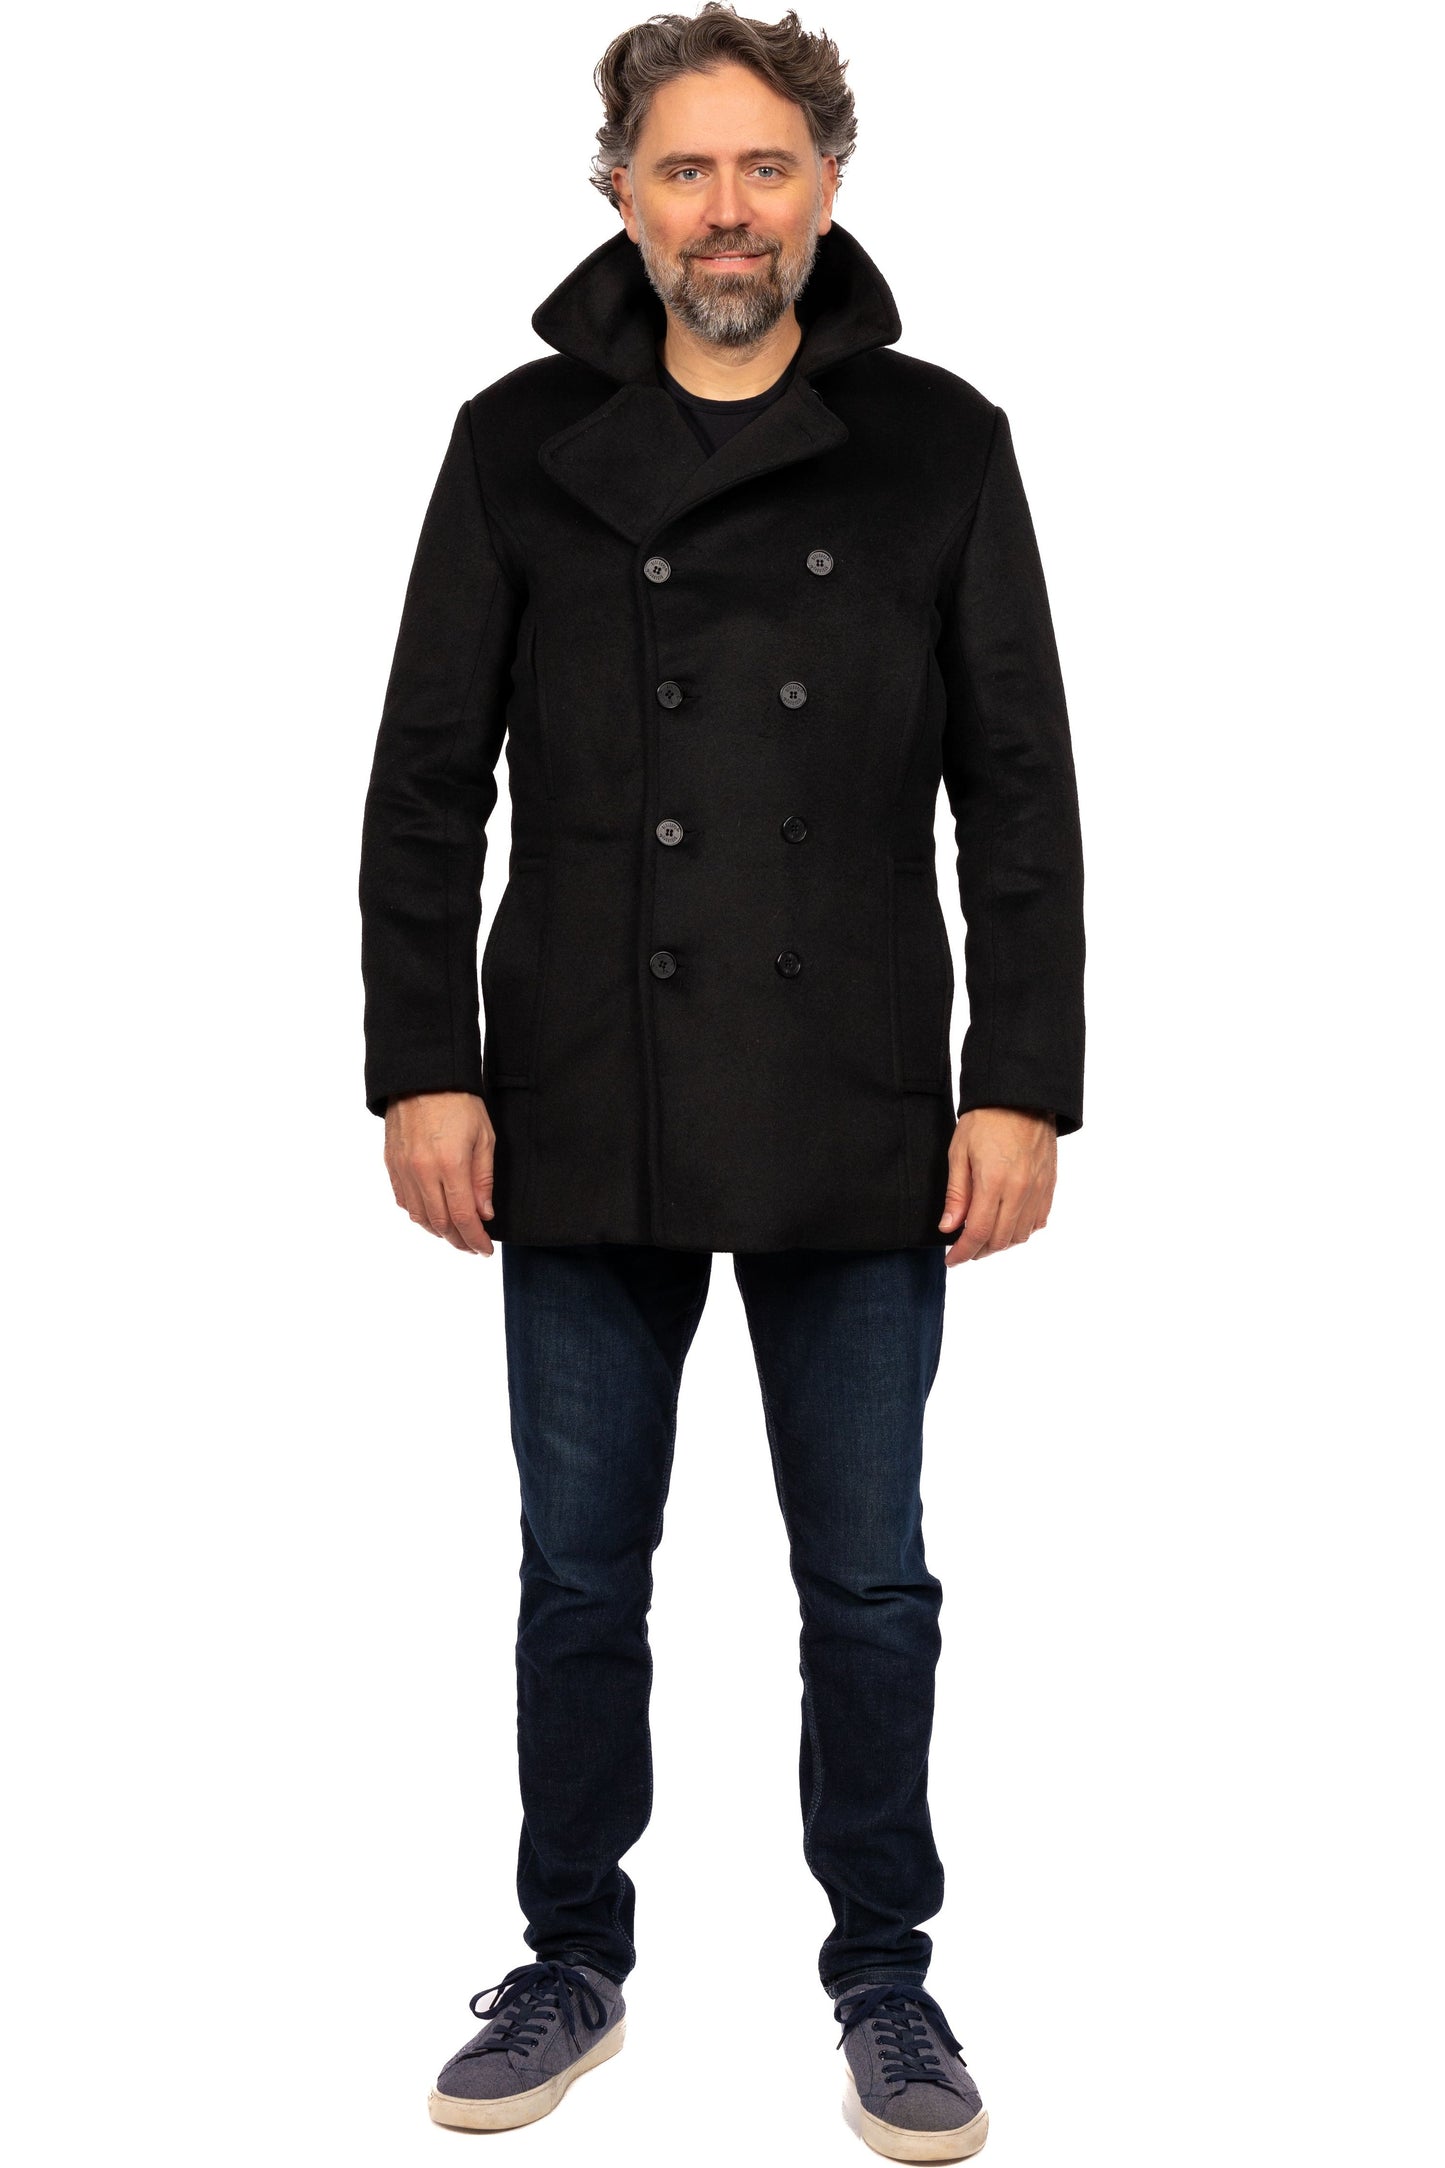 Desloups manteau d'hiver style caban pour homme double boutonnage en 100% laine et doublé